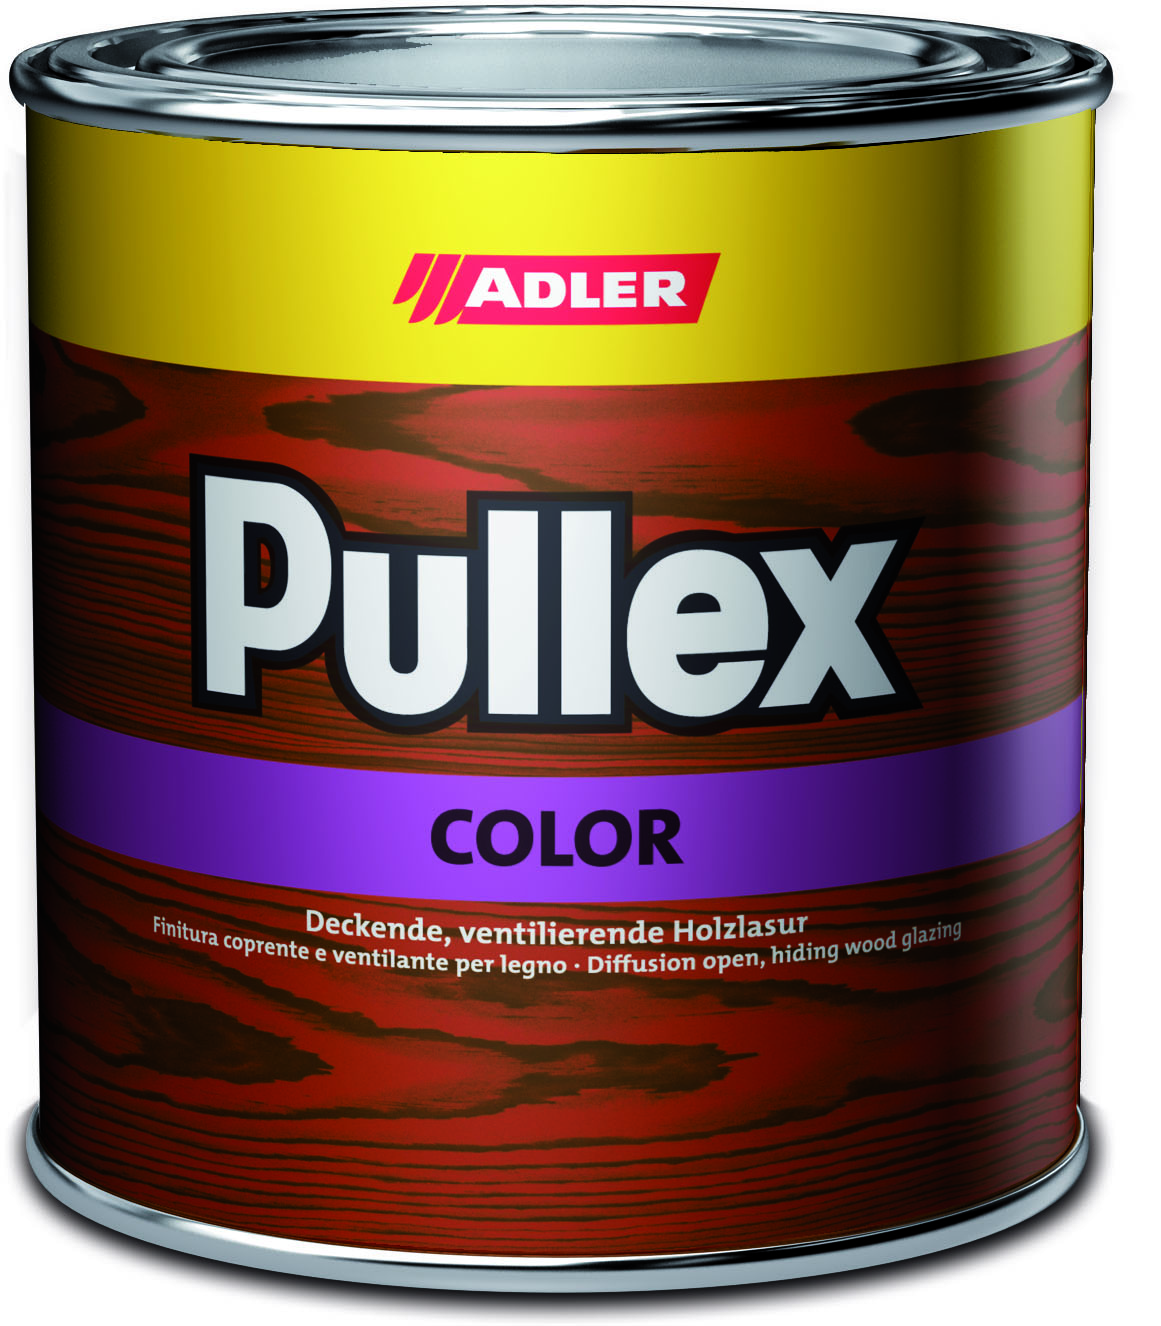 ADLER PULLEX COLOR - Ochranná farba na drevo do exteriéru 750 ml ral 8017 - hnedá čokoládová